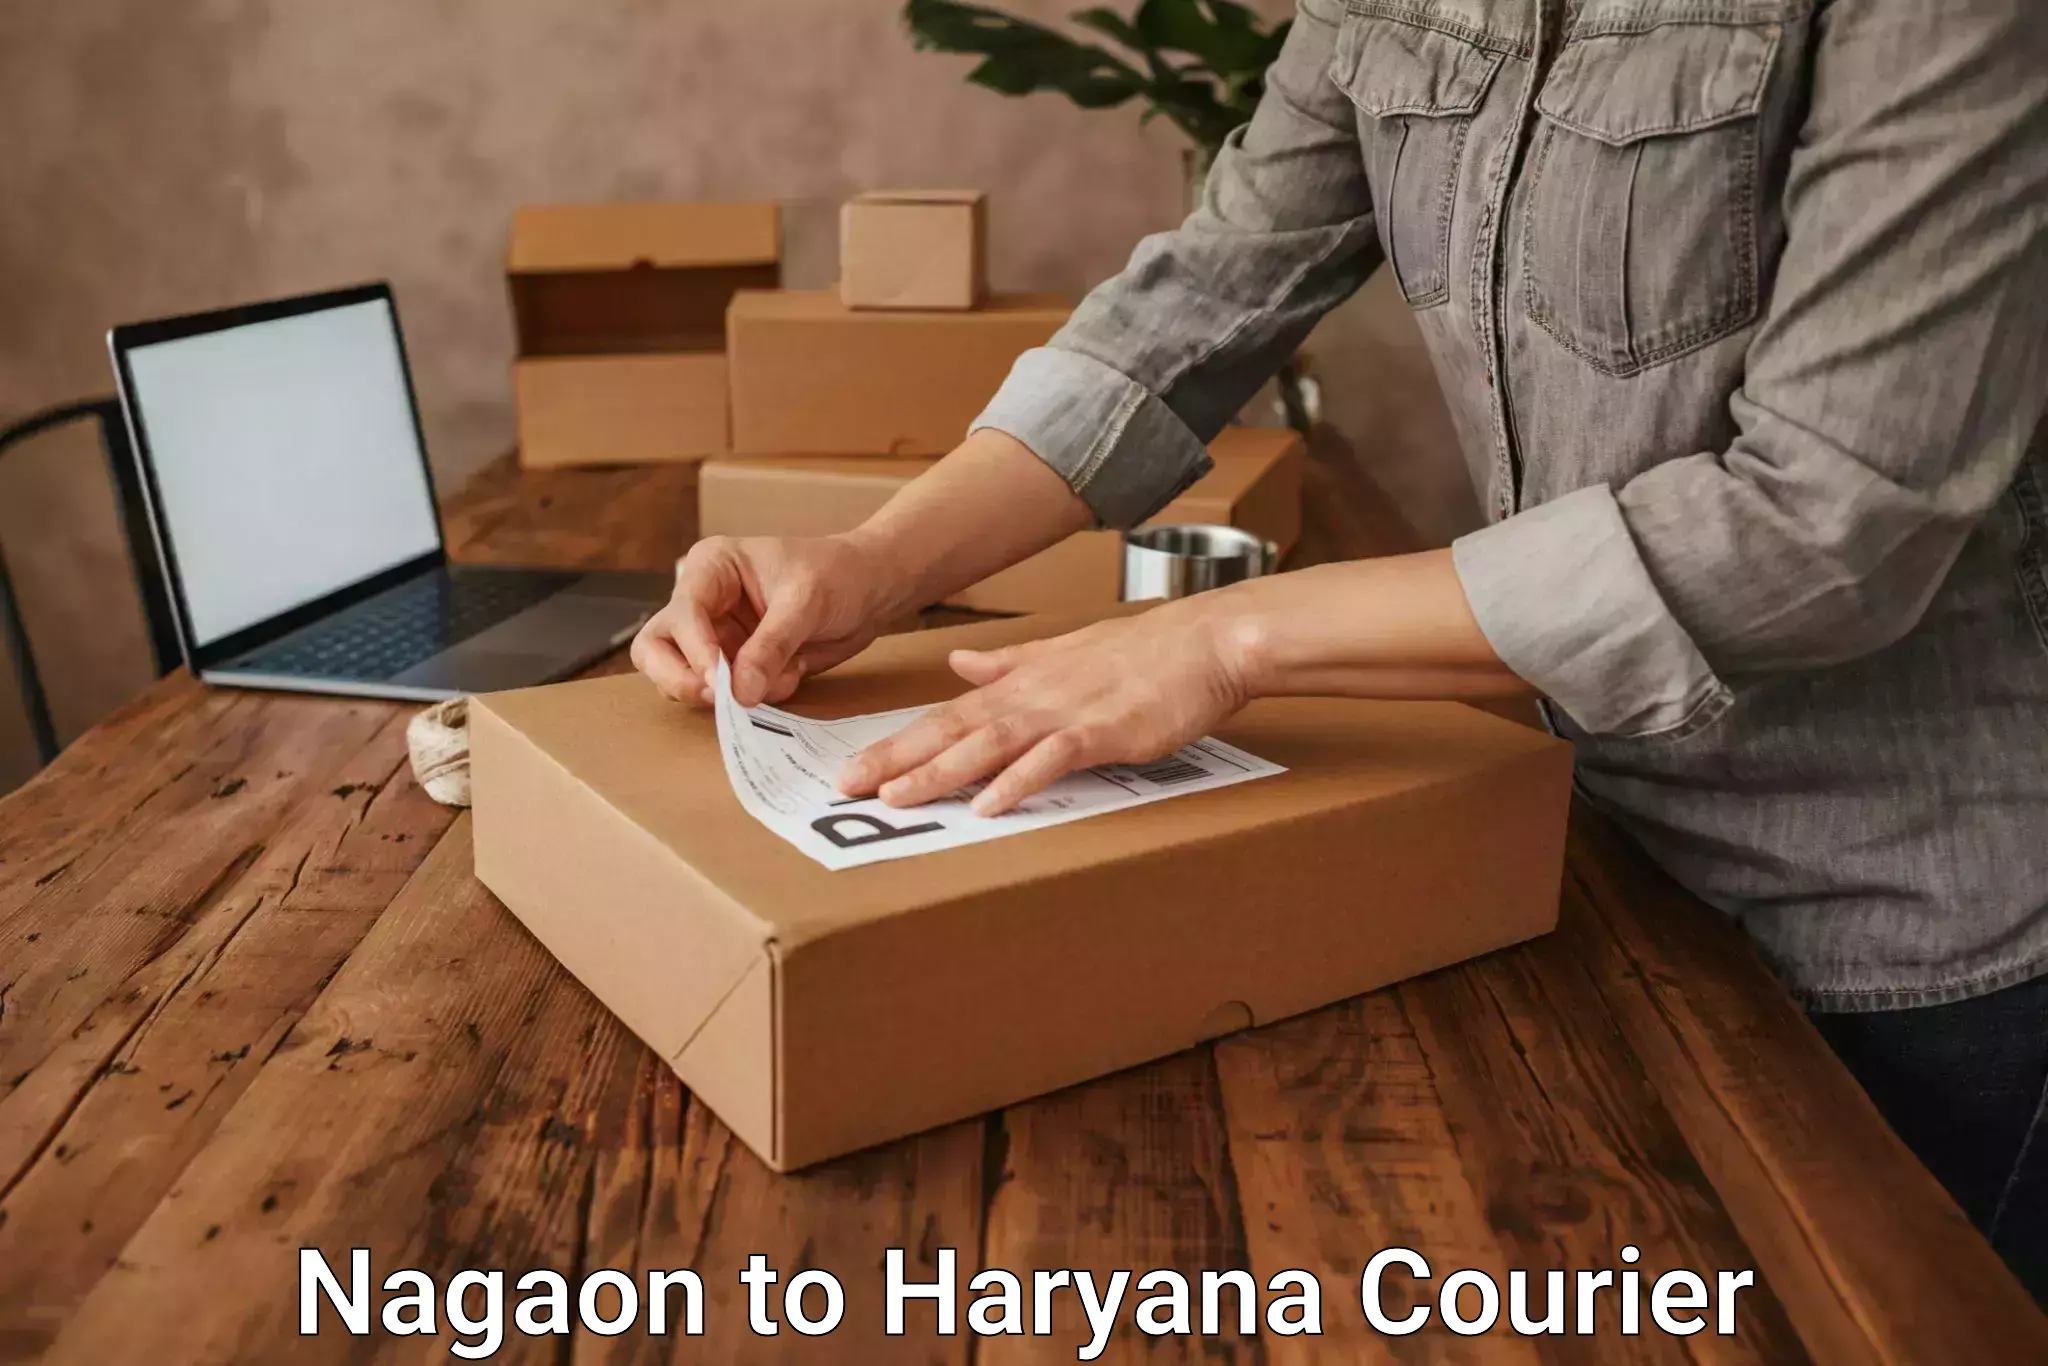 Customized shipping options Nagaon to Gurgaon